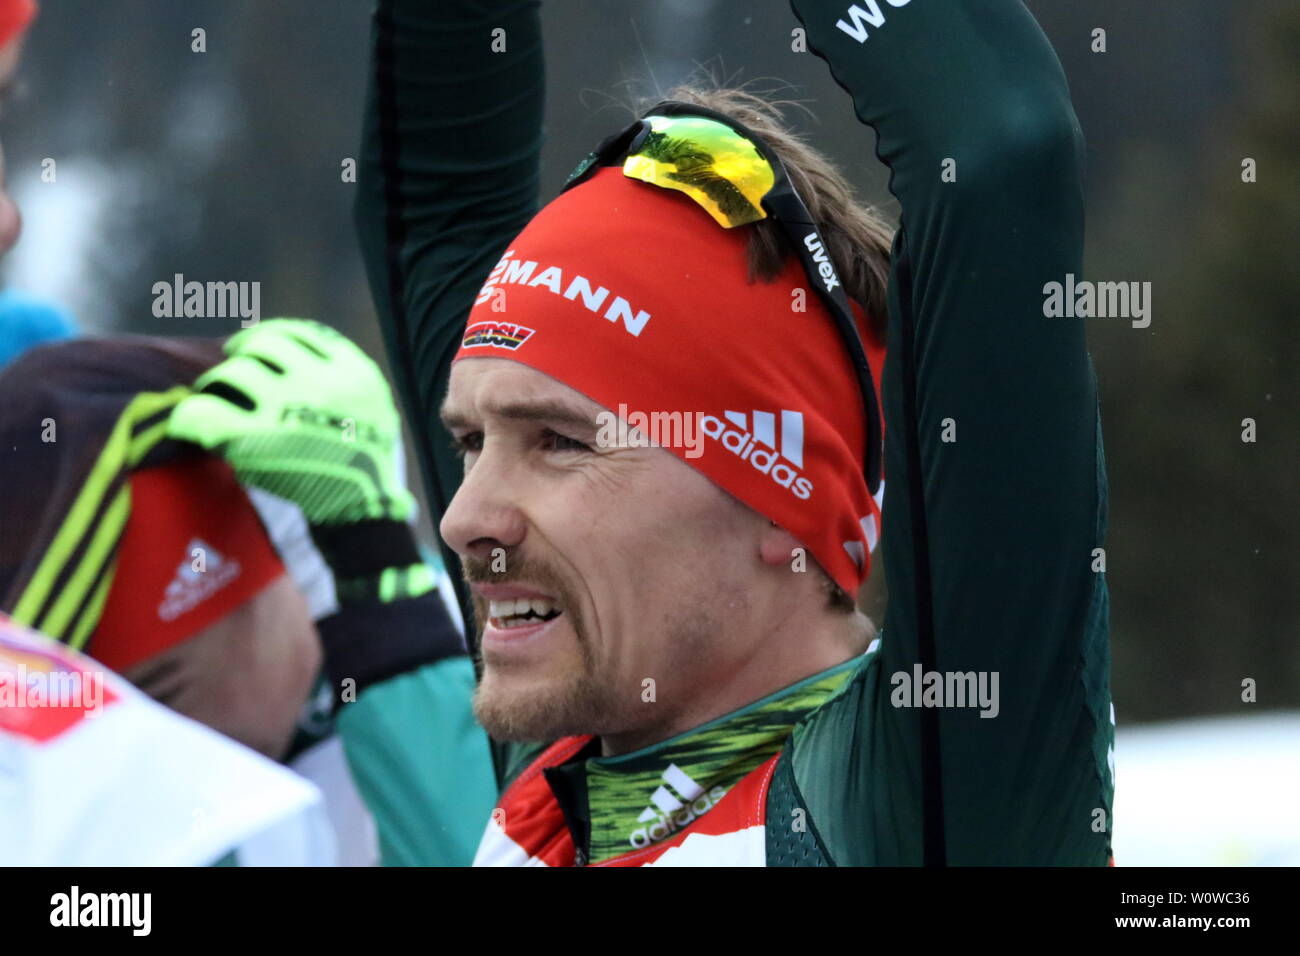 Fabian Riessle (SZ Breitnau /Deutschland) nach der Laufentscheidung in der Nordischen Kombination, FIS Nordische Ski-WM 2019 in Seefeld Stock Photo